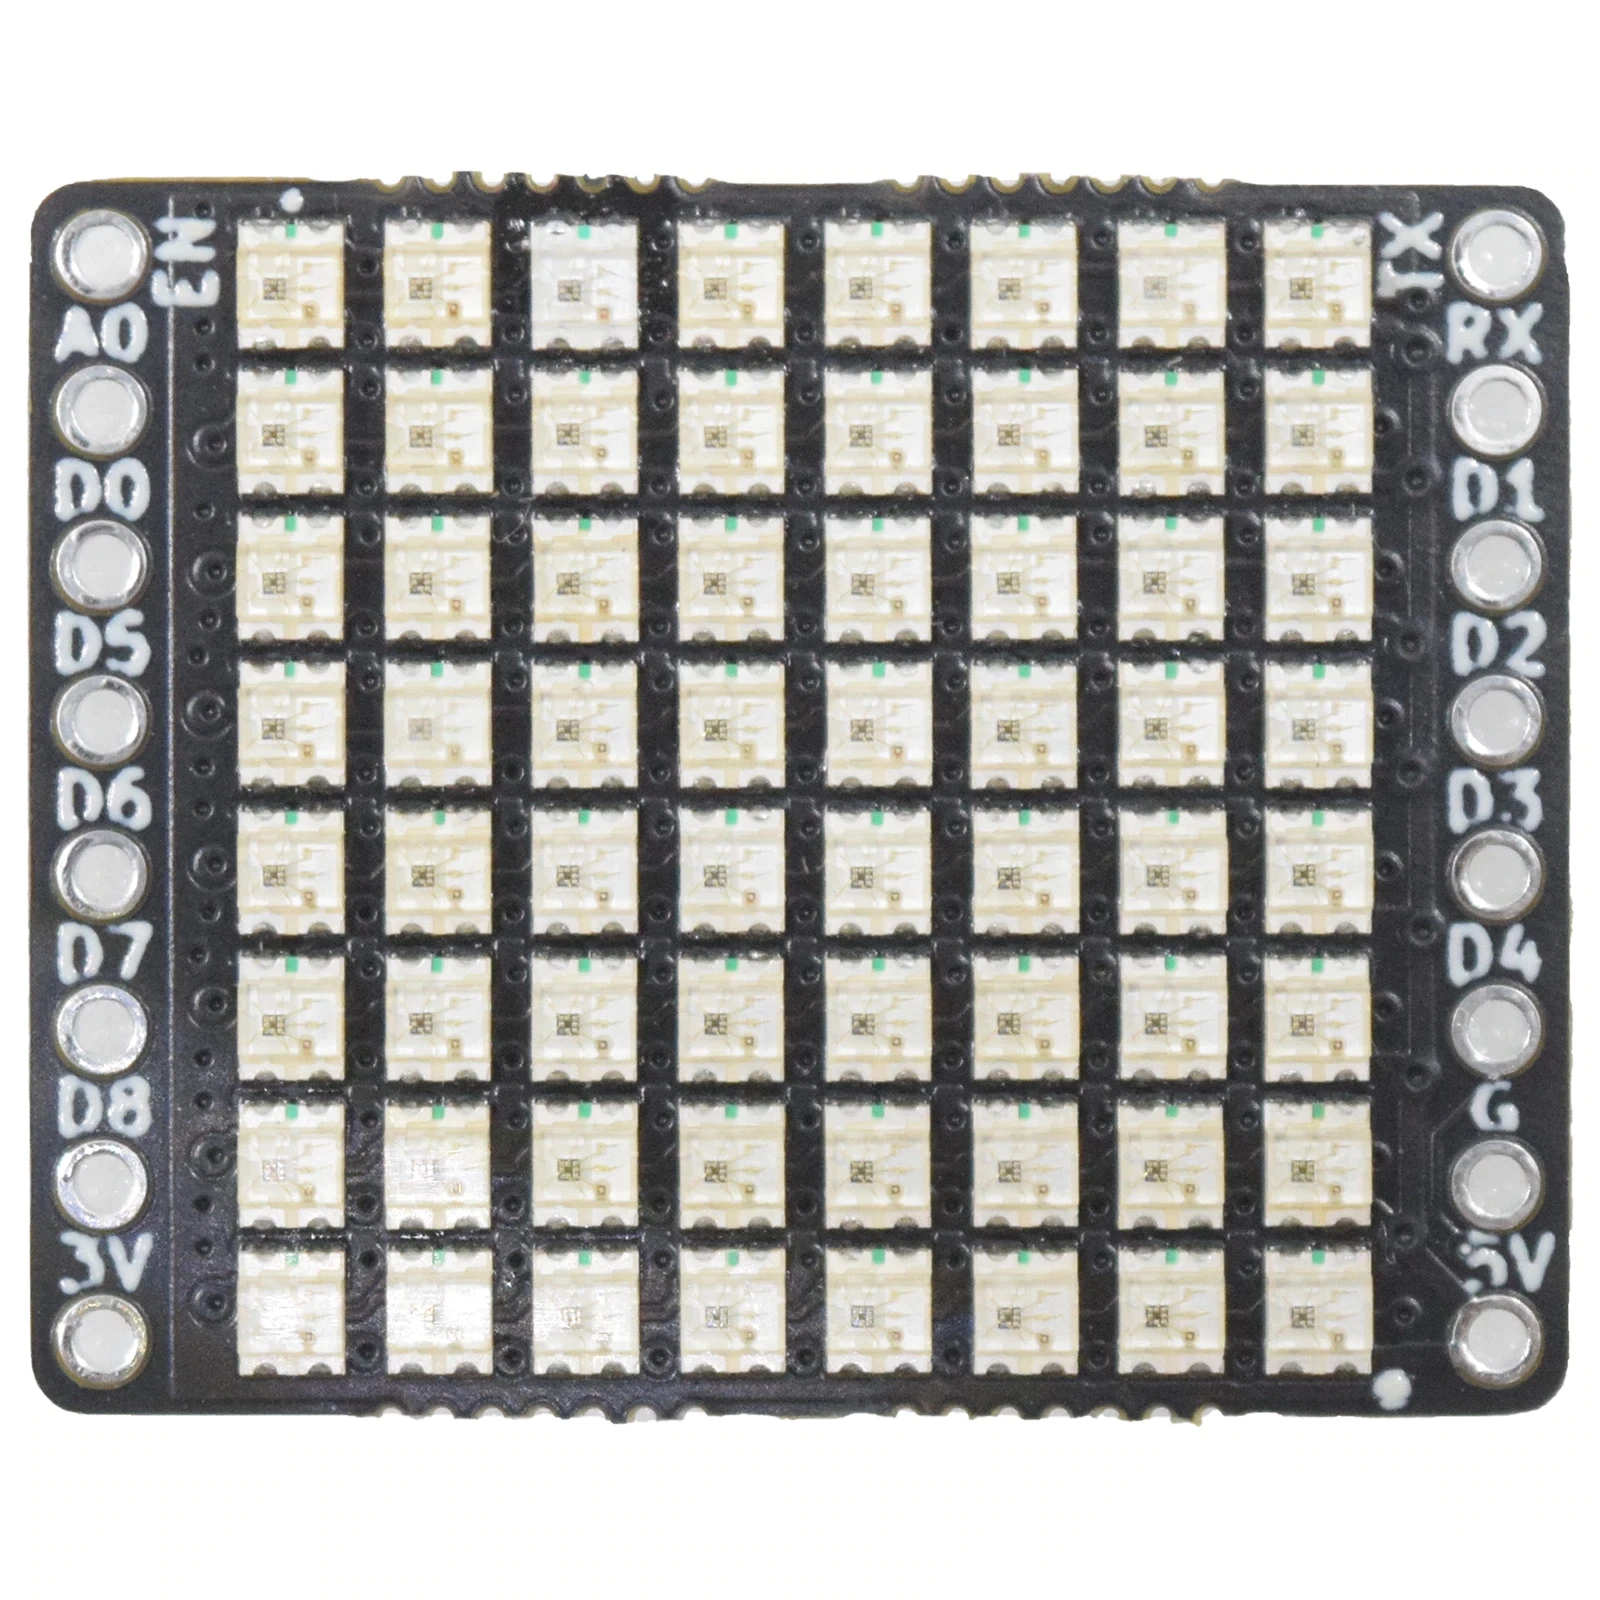 8x8 RGB Shield V1.0.0 for LOLIN D1 S2 C3 mini 64x WS2812B 2020